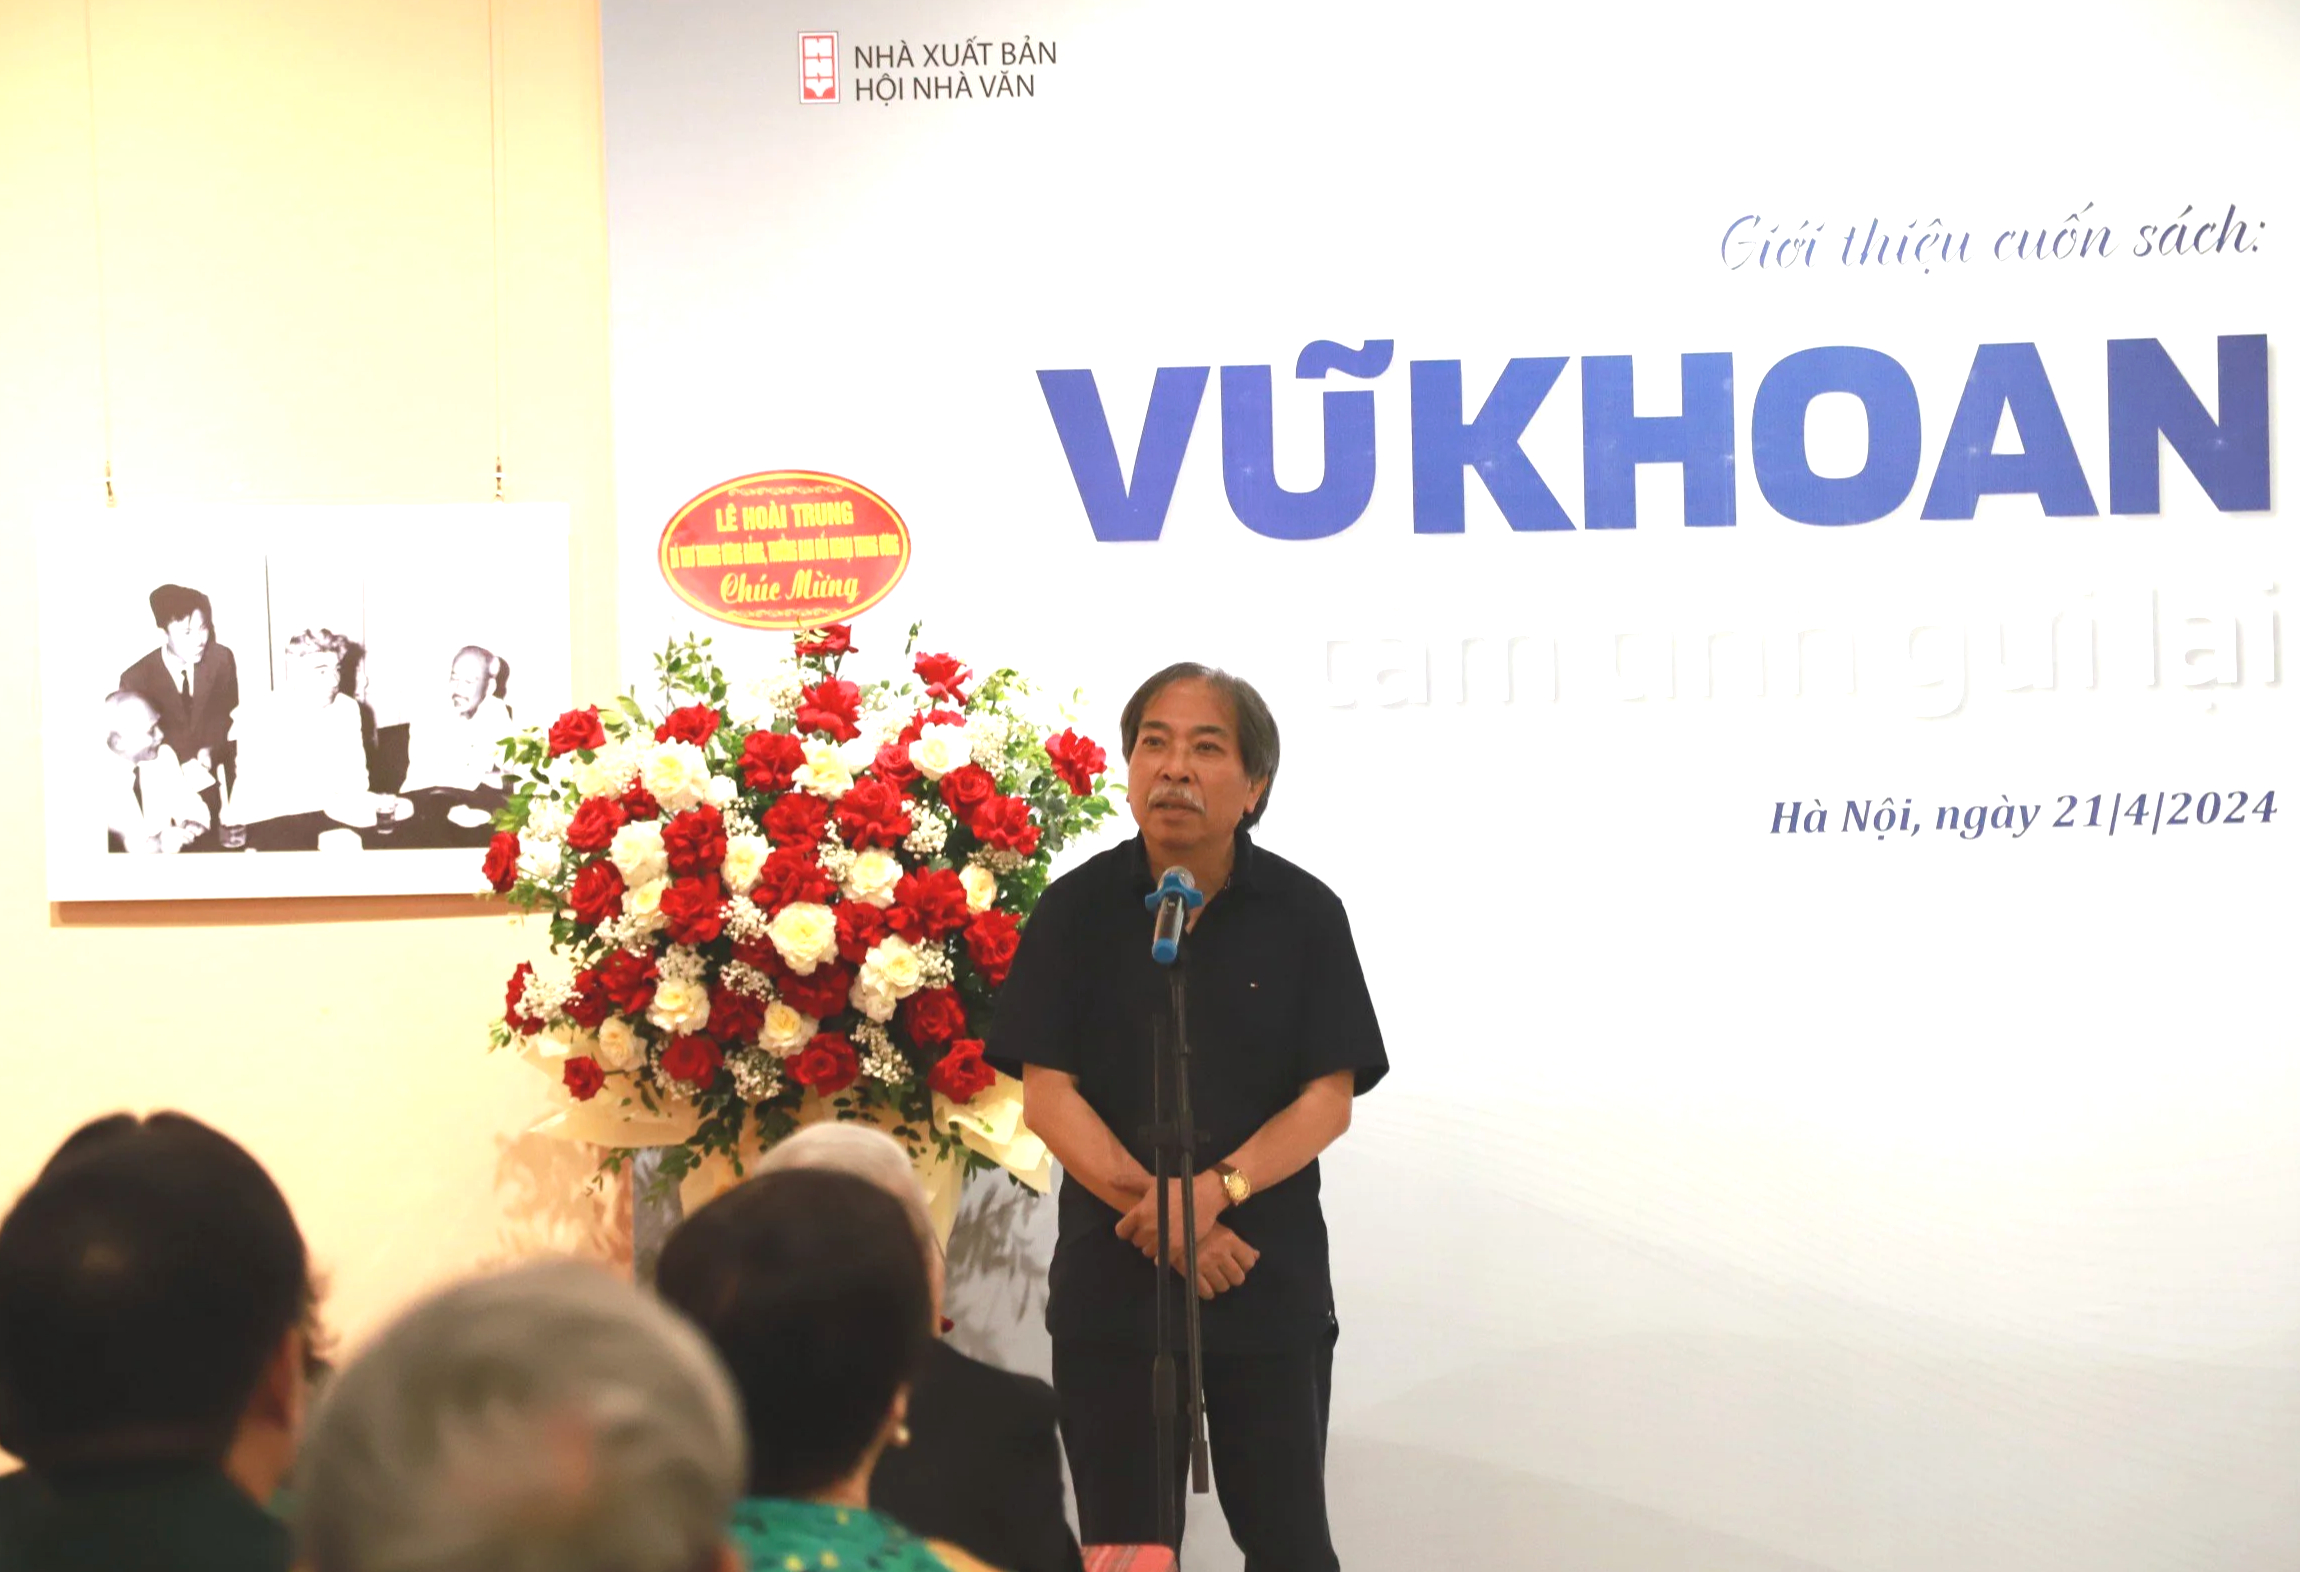 Bộ trưởng Bộ Ngoại giao Bùi Thanh Sơn xúc động kể về cố Phó Thủ tướng Vũ Khoan- Ảnh 3.